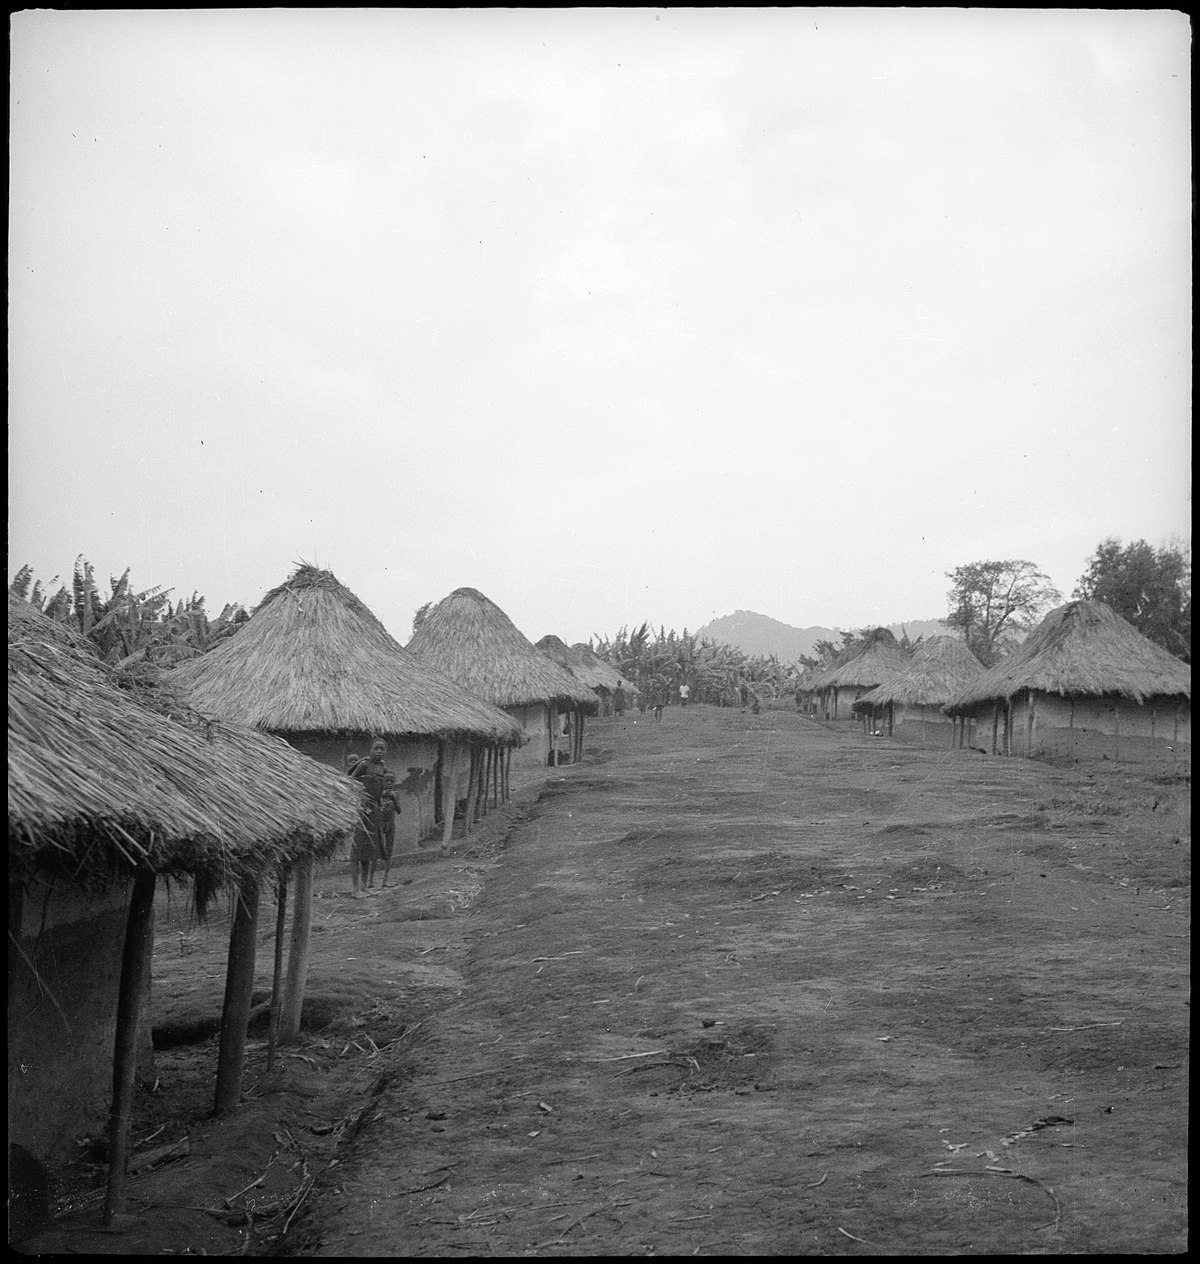 Belgisch-Kongo, Adranga: Garnison; Mehrere Lehmhütten bilden eine Garnison auf einem Platteau